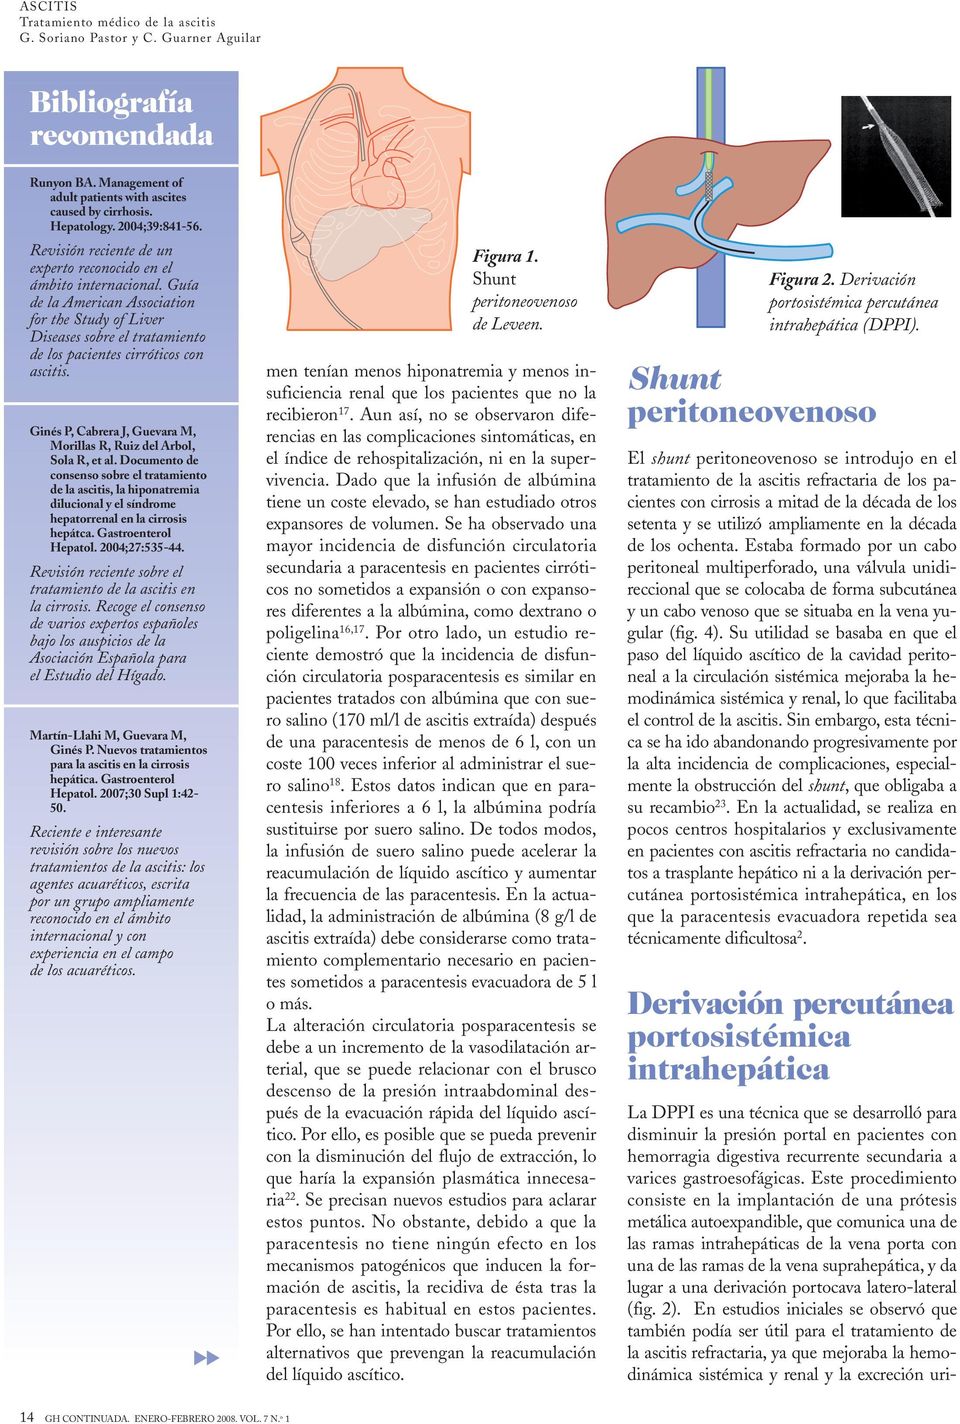 Documento de consenso sobre el tratamiento de la ascitis, la hiponatremia dilucional y el síndrome hepatorrenal en la cirrosis hepátca. Gastroenterol Hepatol. 2004;27:535-44.